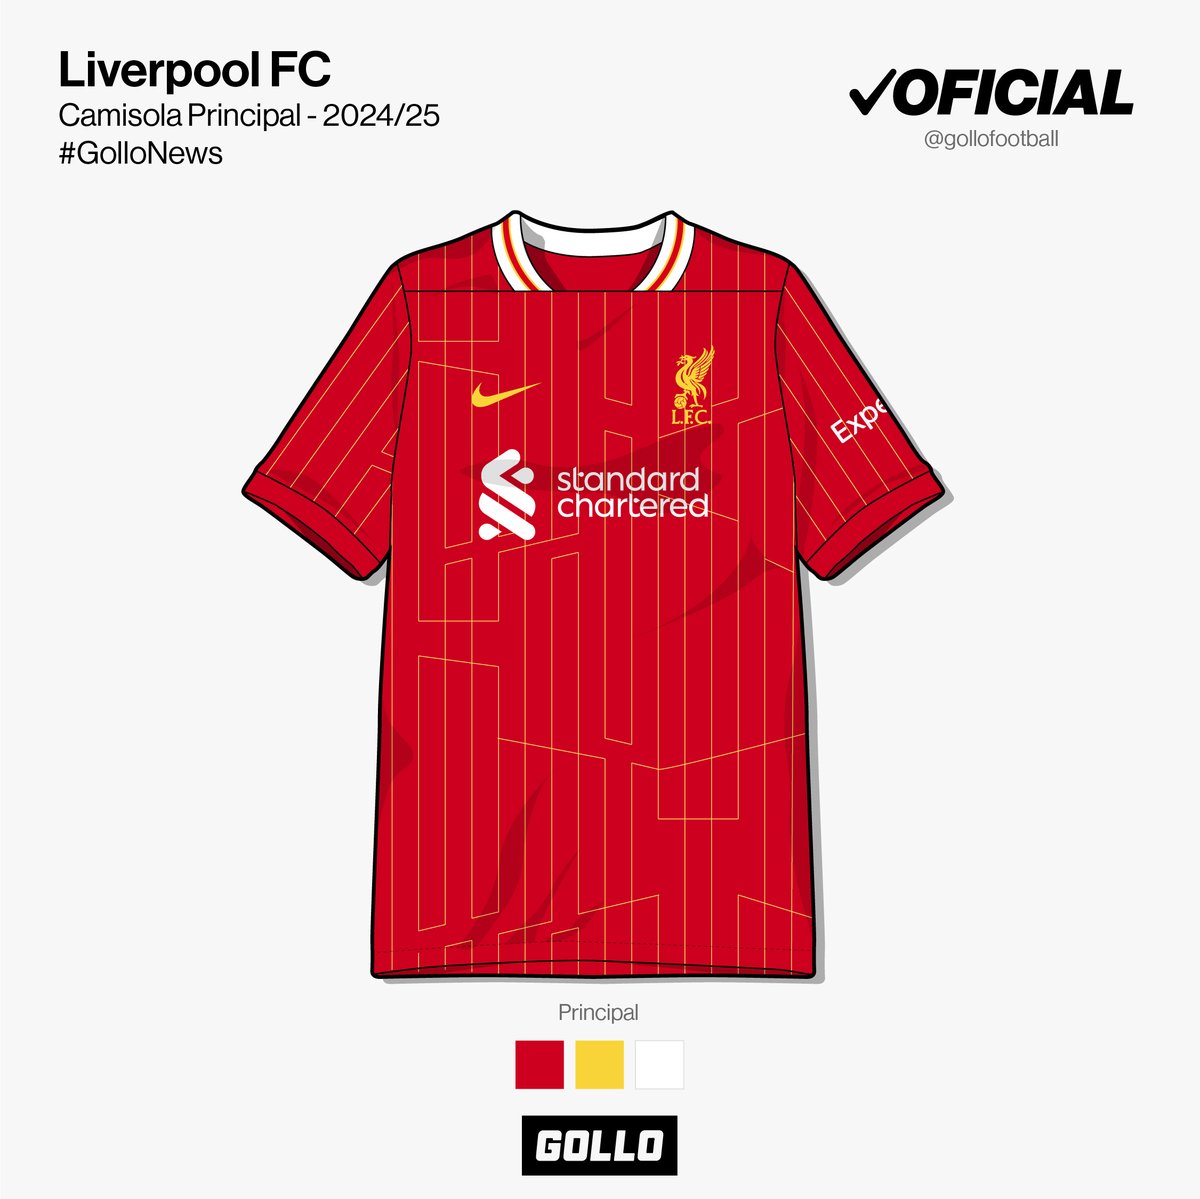 O Liverpool lançou oficialmente a sua camisola principal para a época 2024/25. 🔴⚪️ É inspirada na camisola utilizada na final conquistada da Liga dos Campeões de 1984 contra a Roma. Traz uma gola inovadora e um padrão de linhas verticais também um pouco fora do comum. O que…